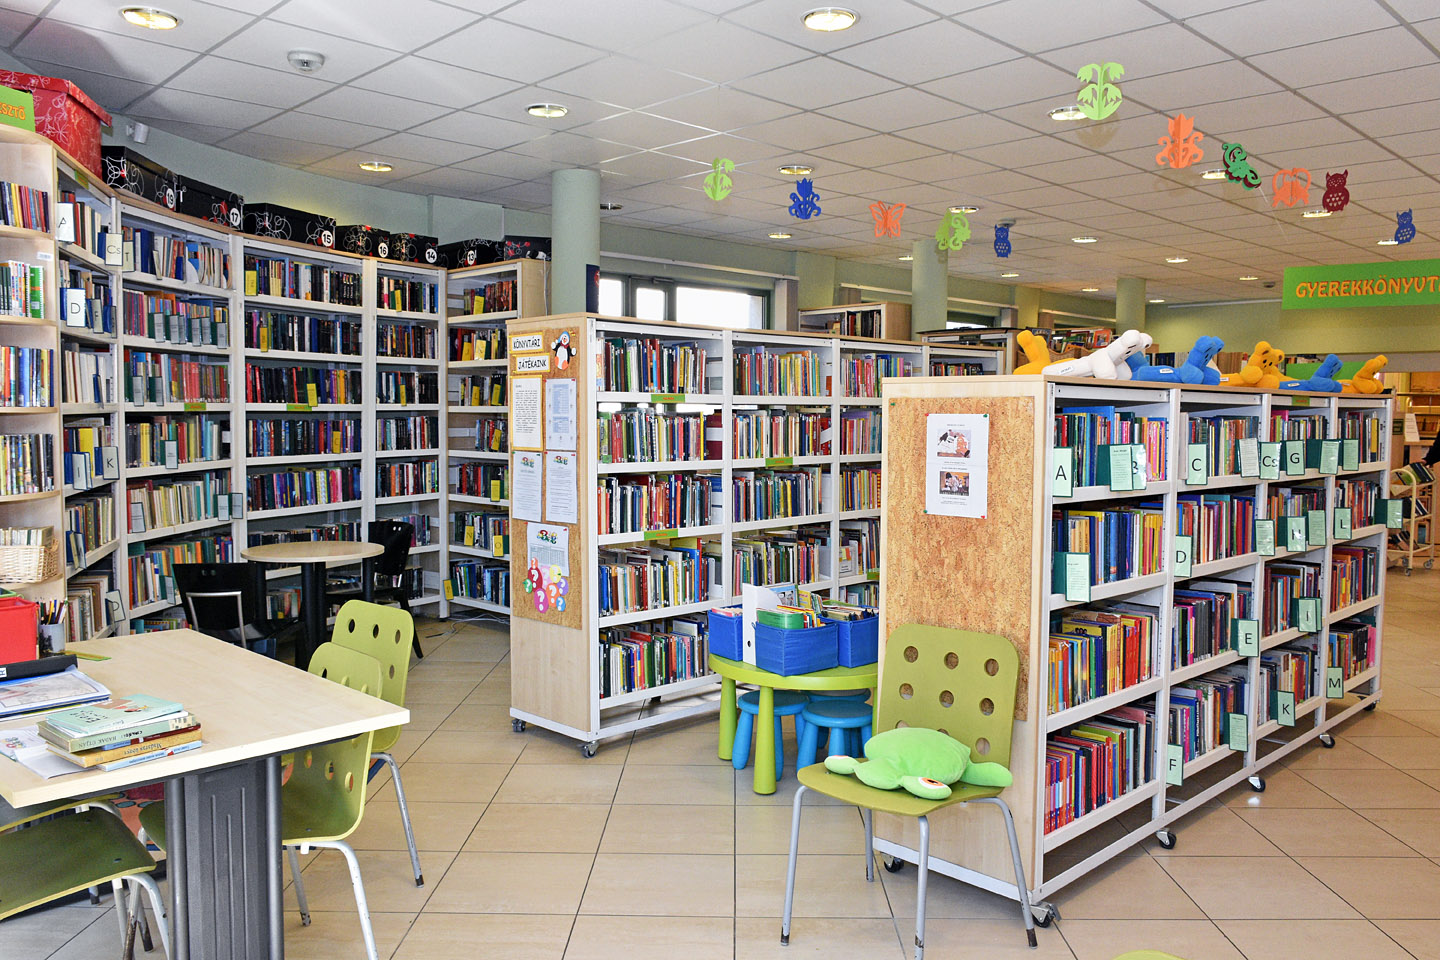 kép a gyerekkönyvtárról